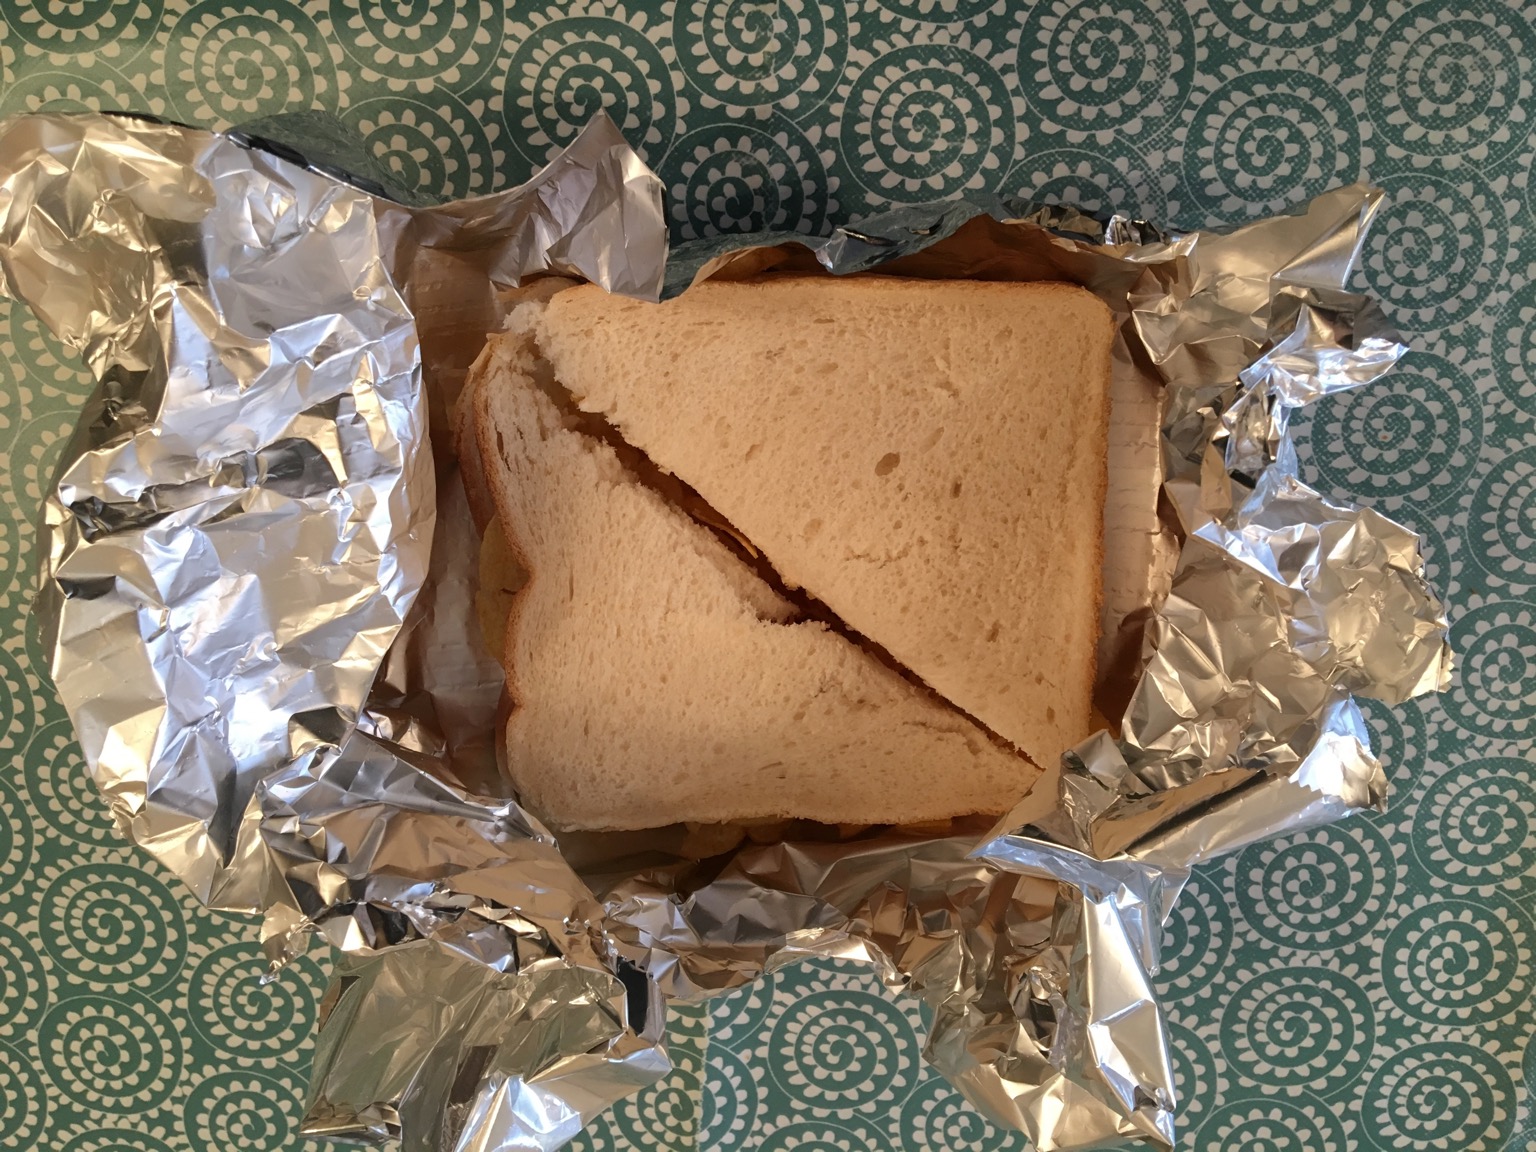 Overhead view of a crisp sandwich in foil